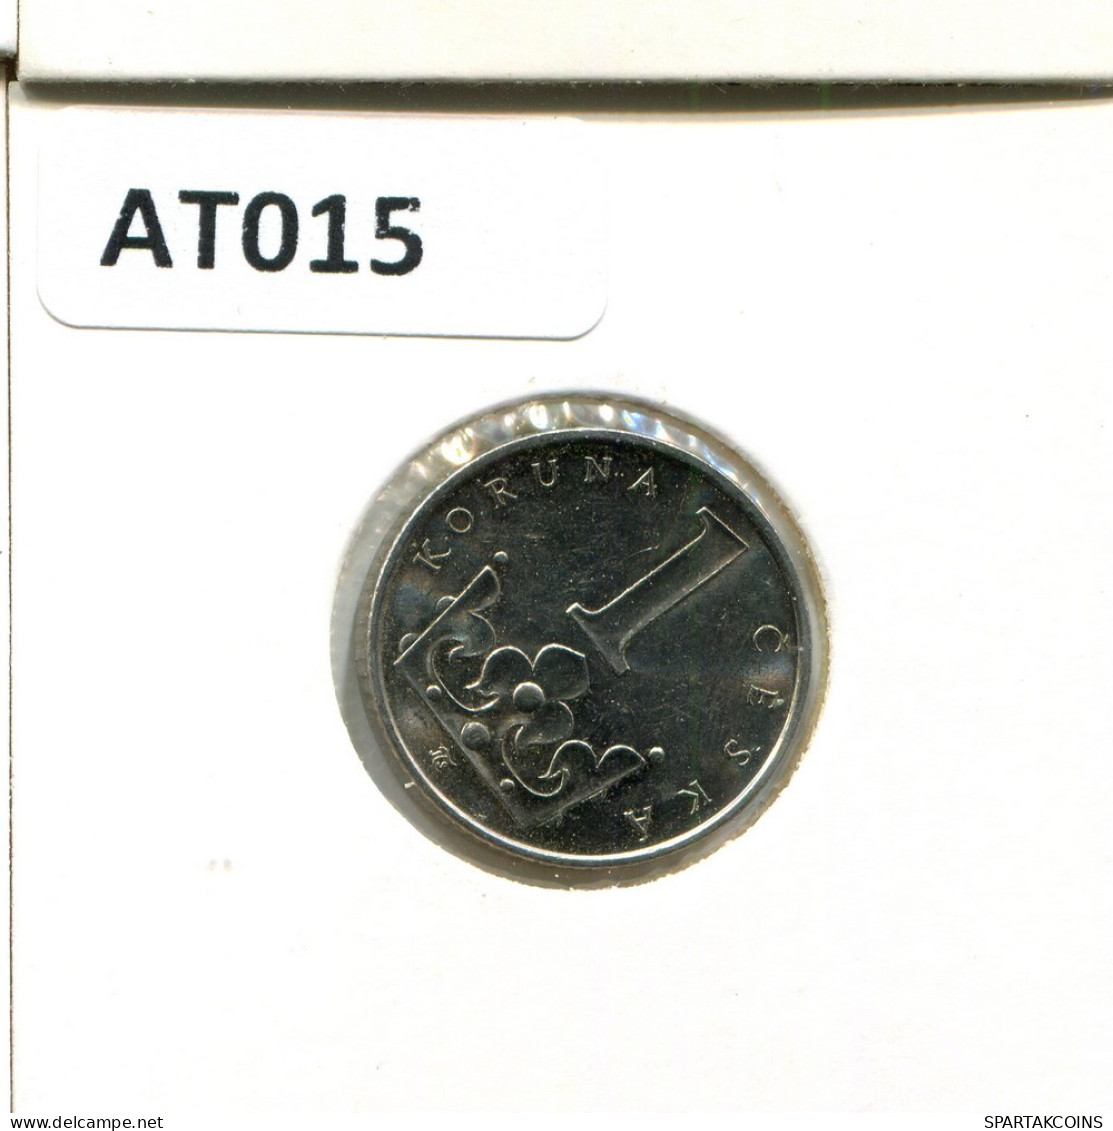 1 KORUNA 2000 CZECH REPUBLIC Coin #AT015.U.A - República Checa